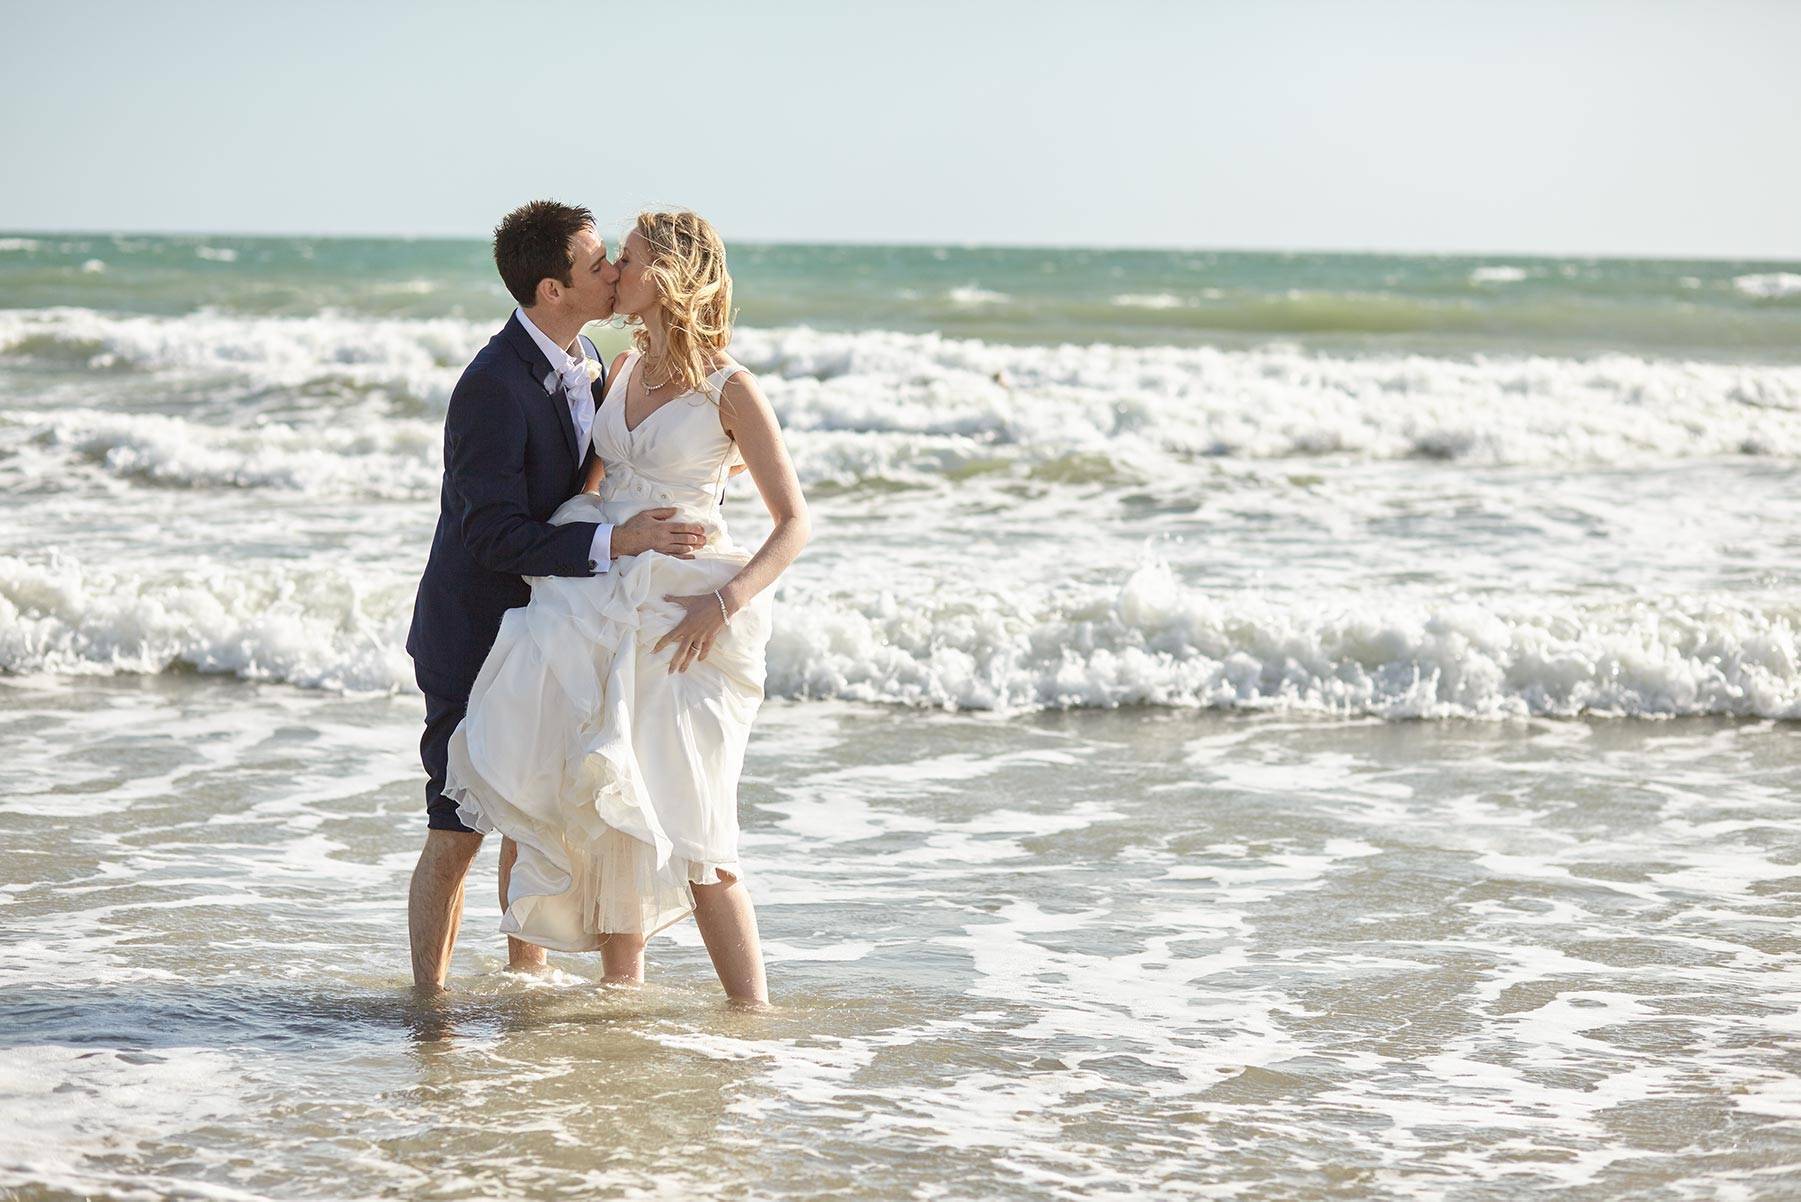 6 Essential Skills Every Wedding Photographer Needs